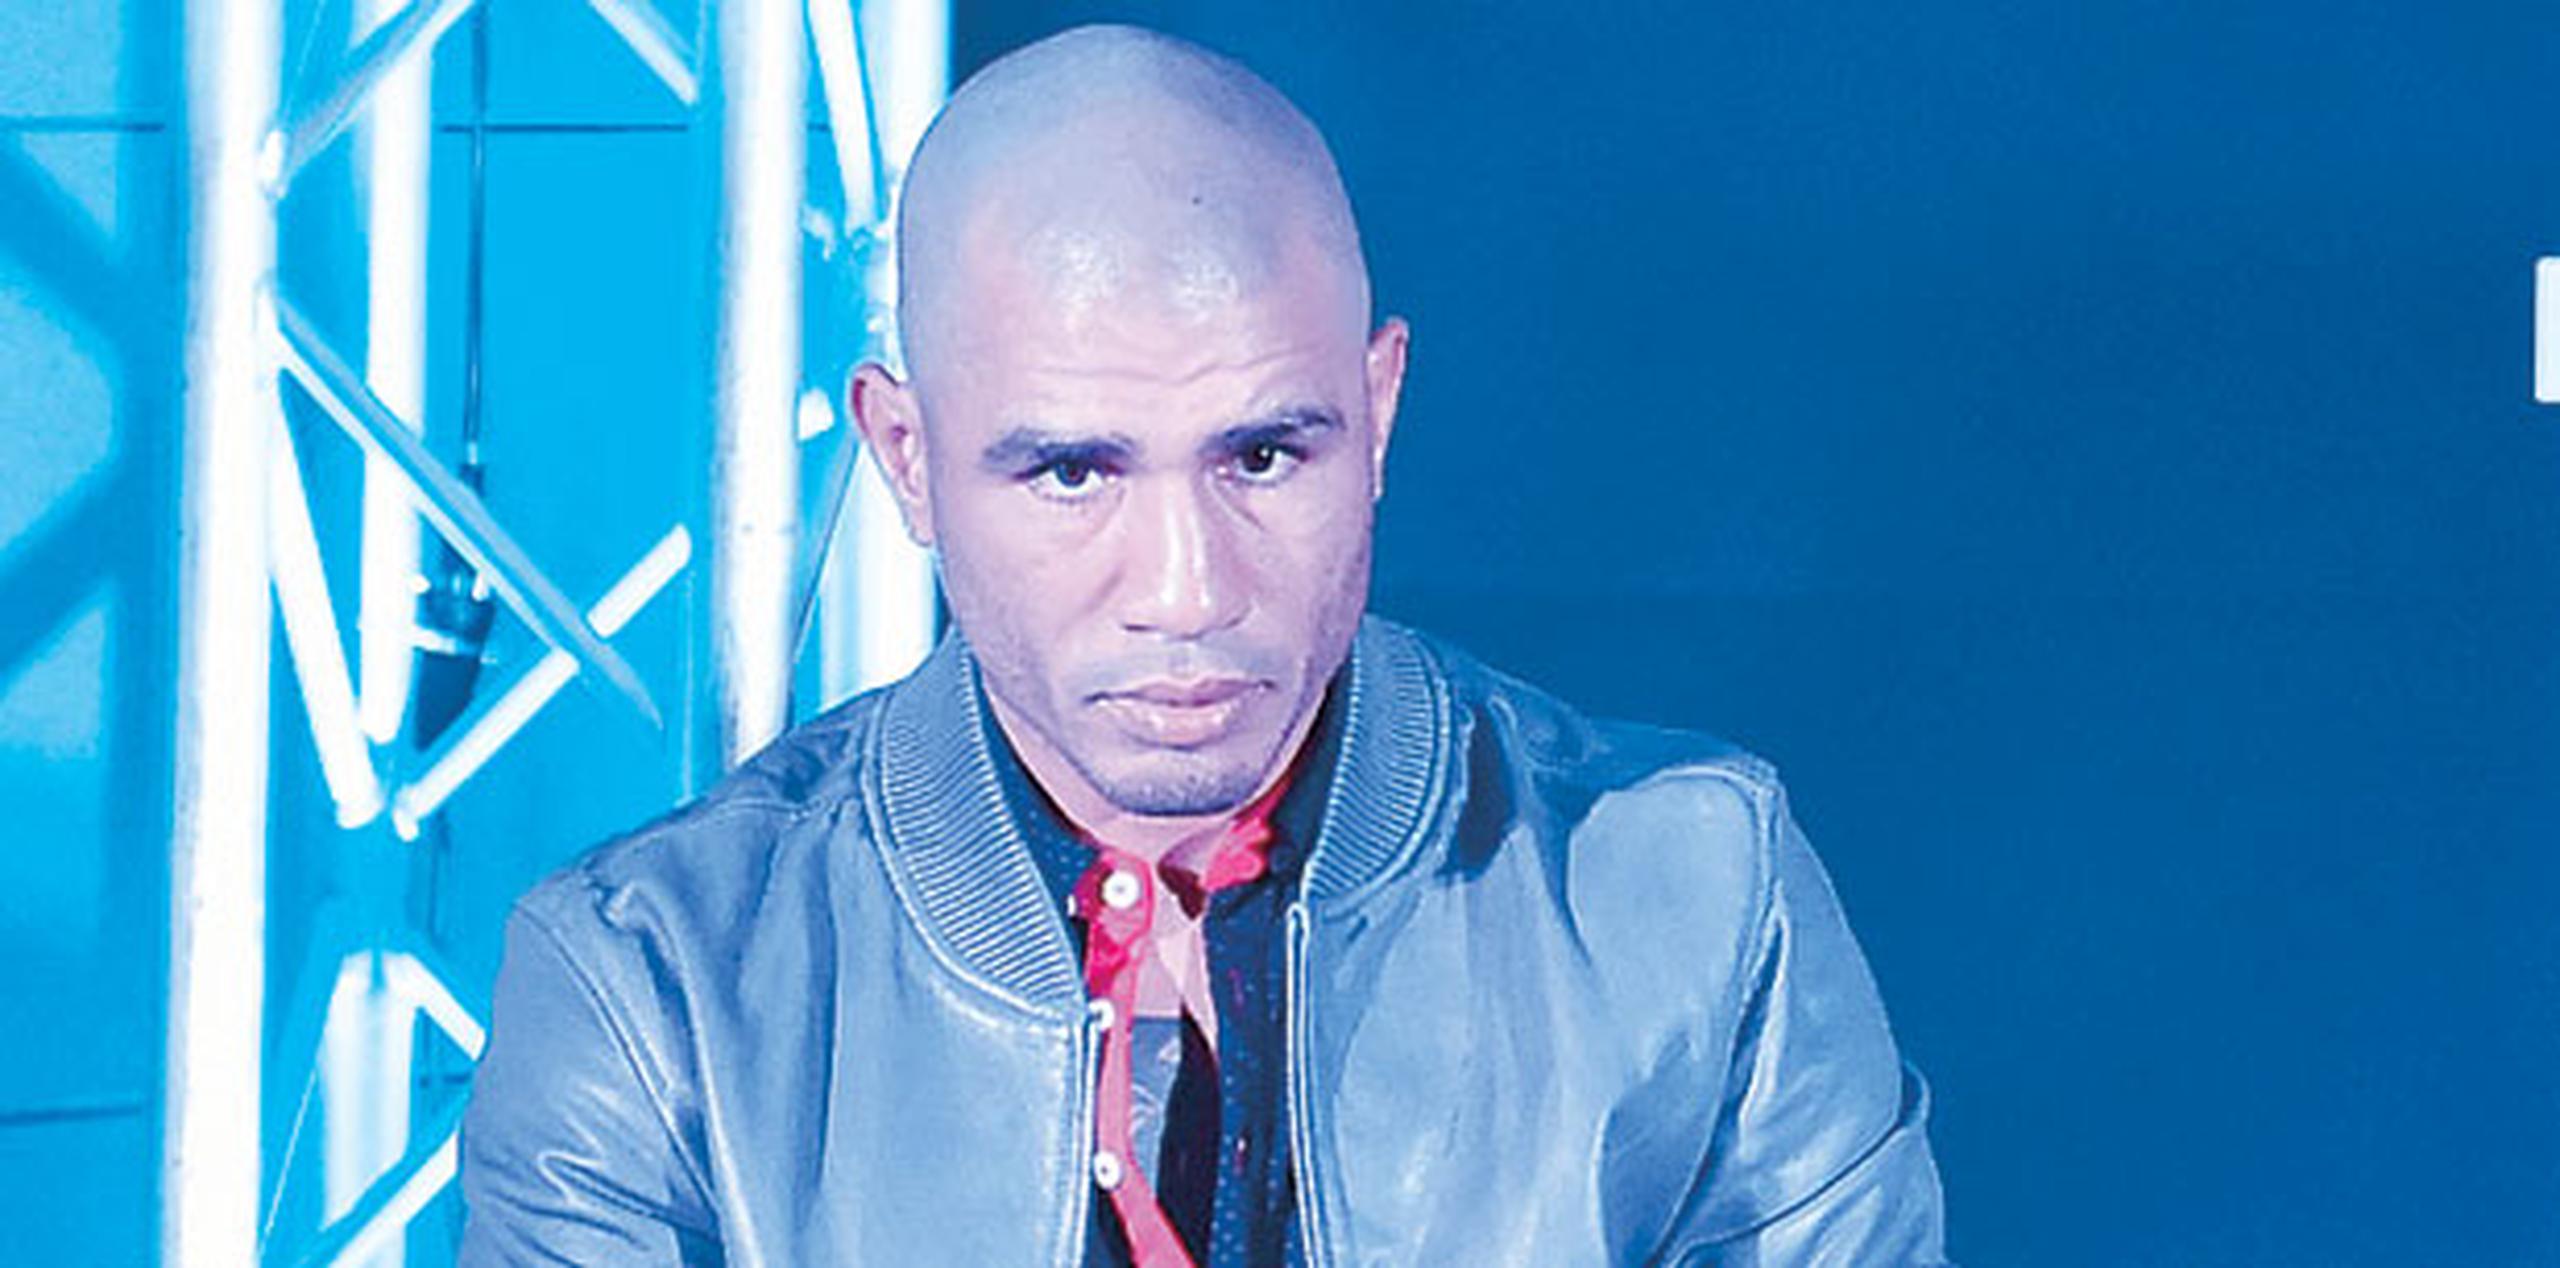 Miguel Cotto peleará con el mexicano Saúl “Canelo” Álvarez el próximo 21 de noviembre en el Mandalay Bay, de Las Vegas. (Archivo)